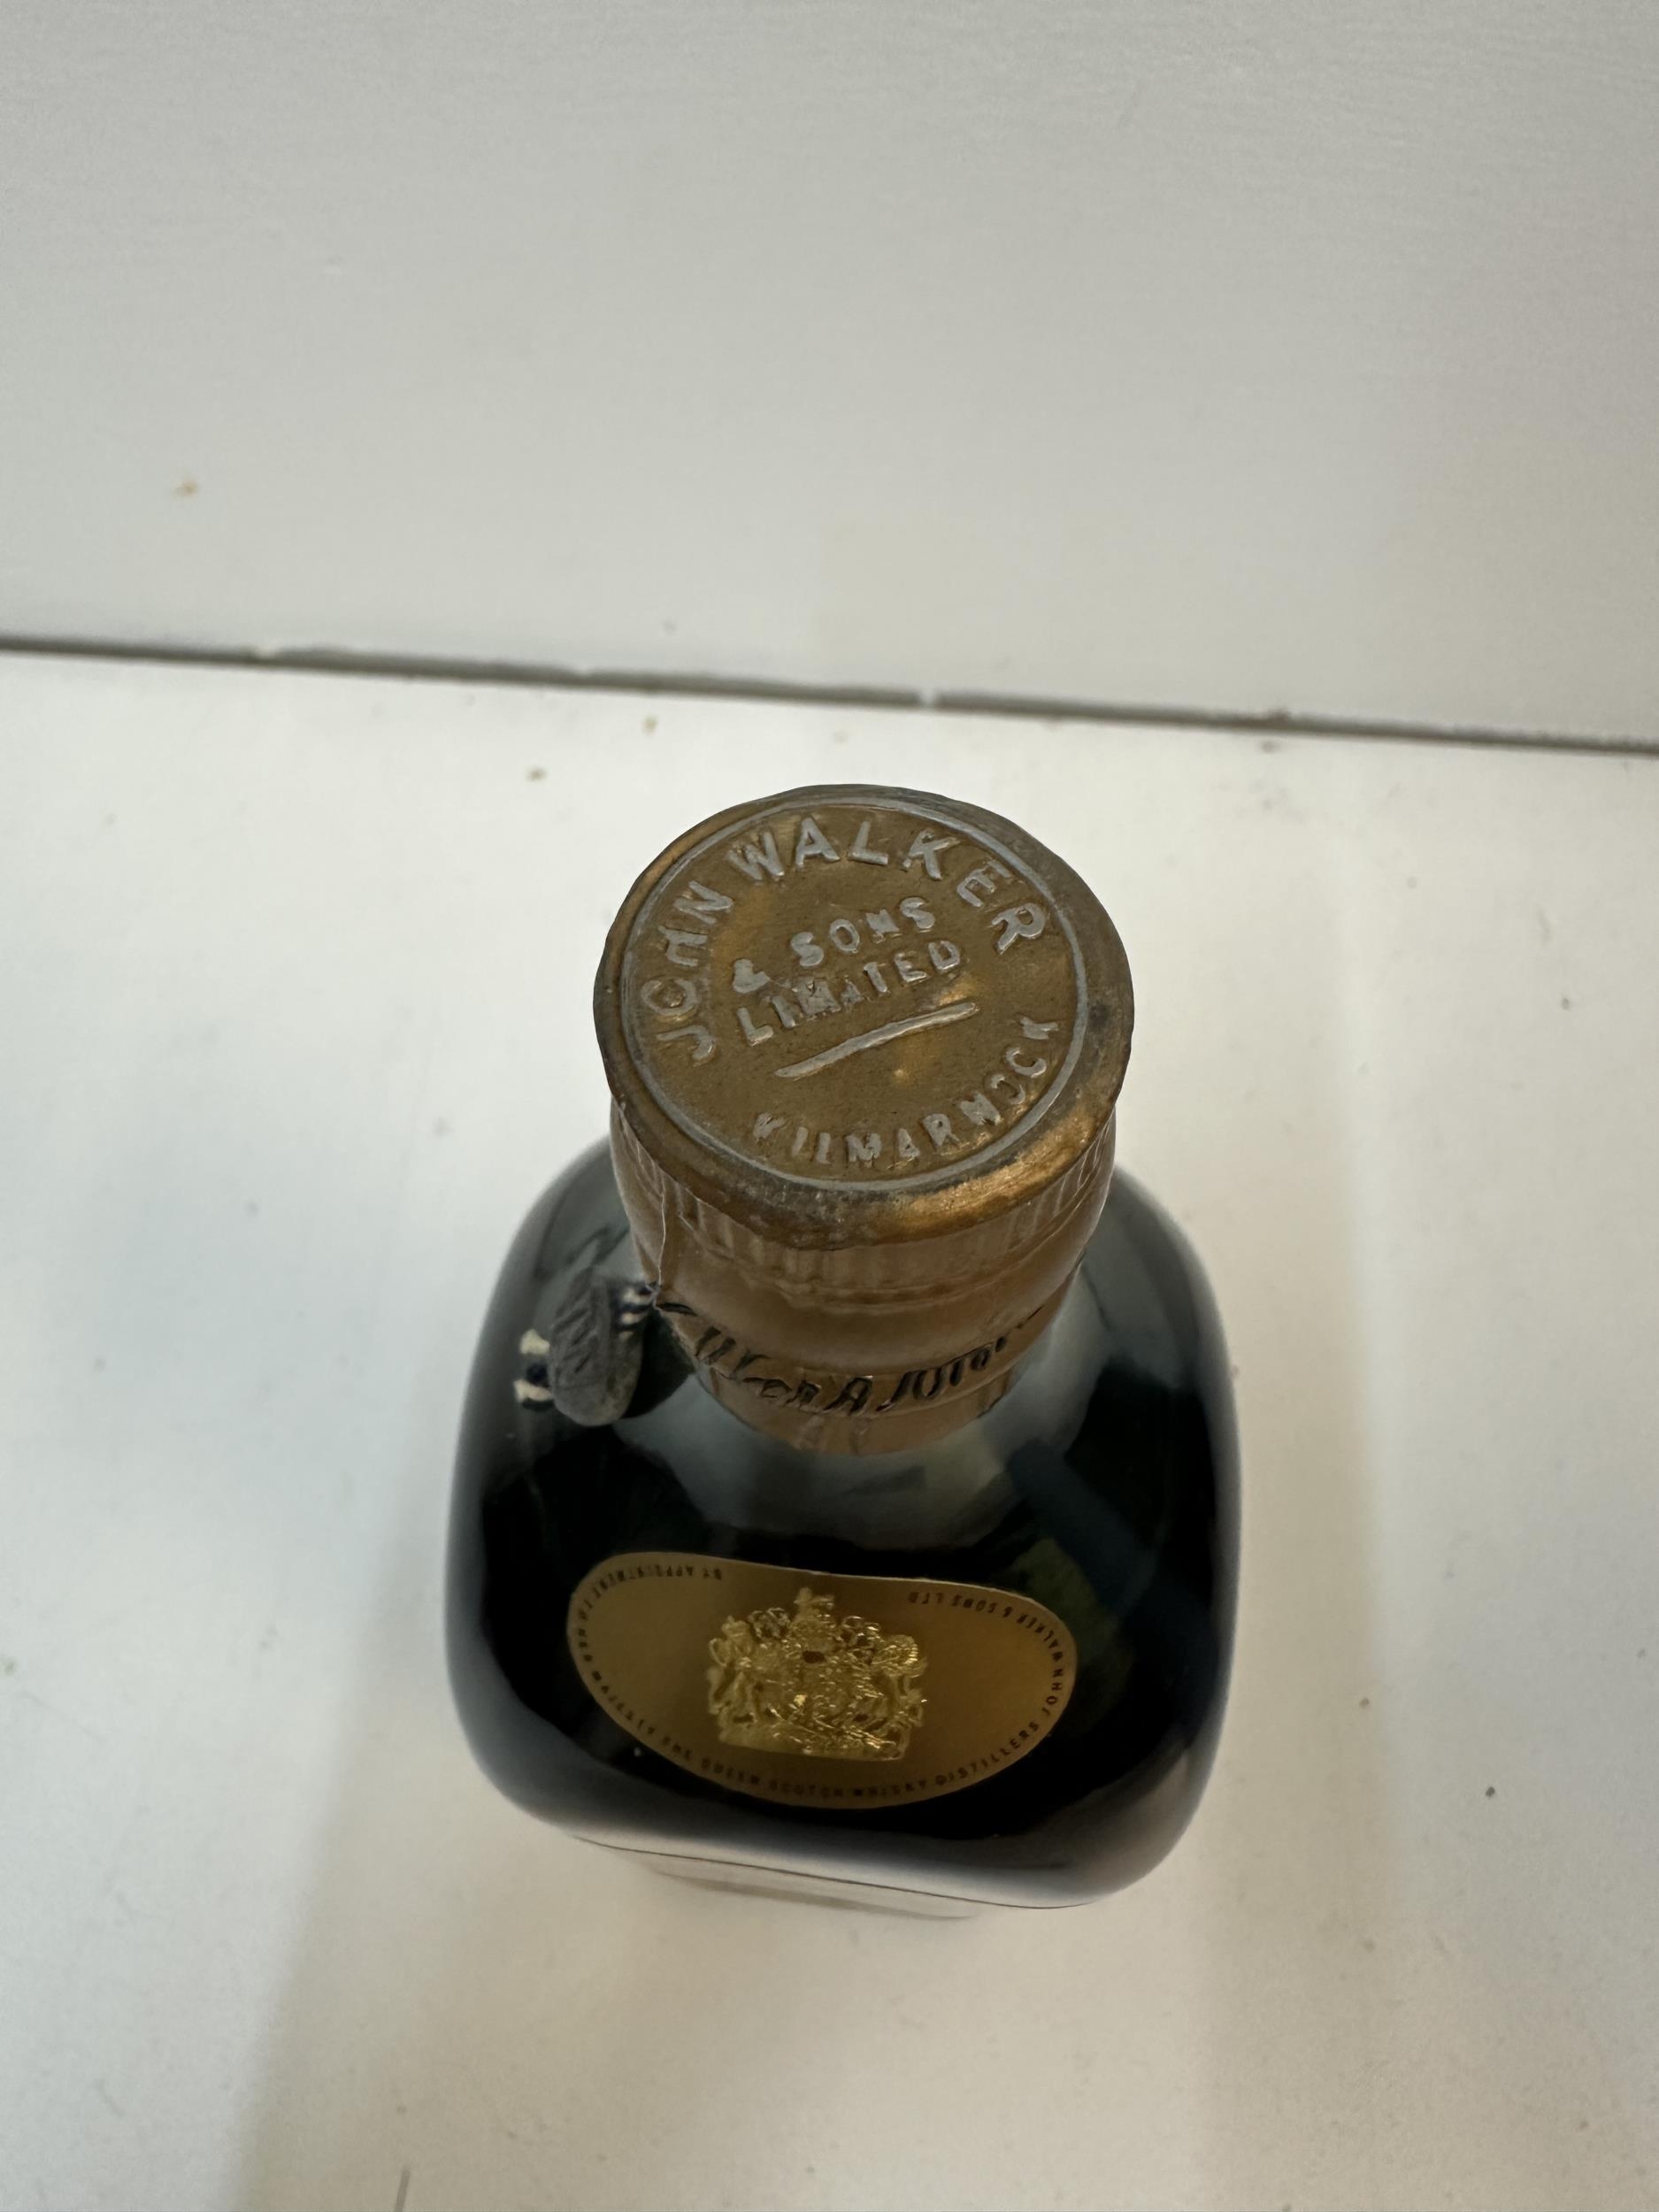 Johnnie Walker Oldest 1820 Scotch whisky, bottle no H32796 JW - Image 3 of 4